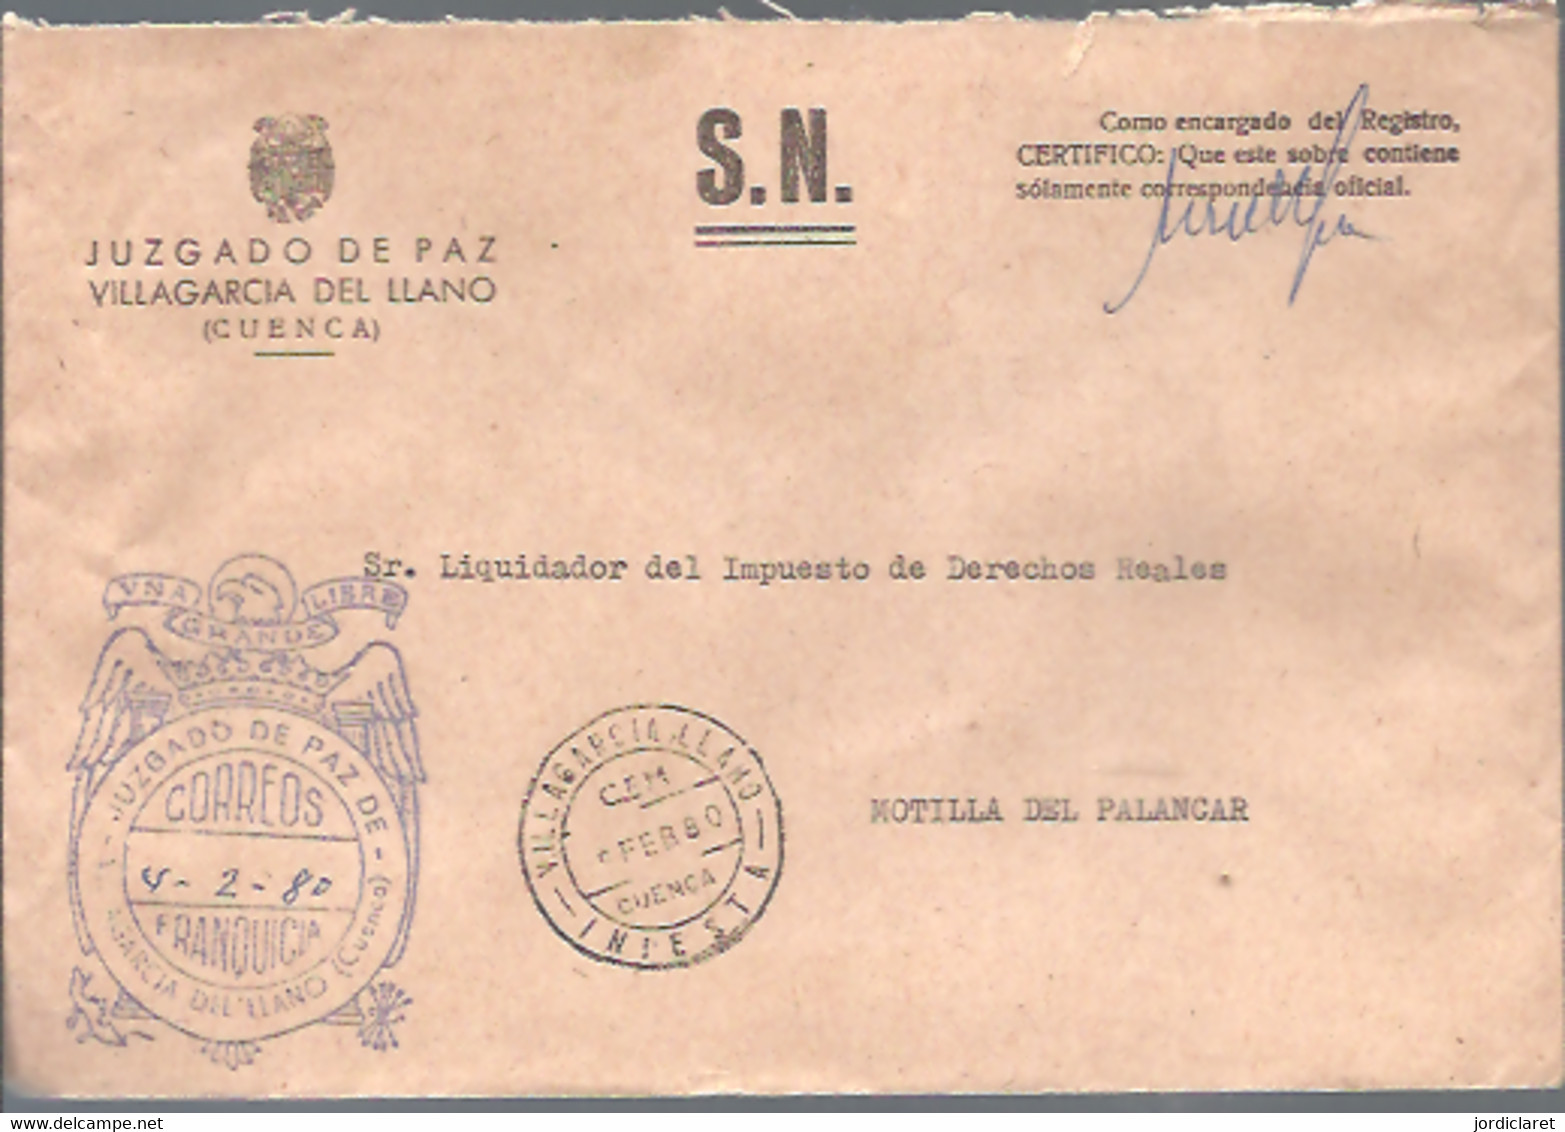 JUZGADO DE PAZ 1980  VILLAGARCIA DEL LLANO  CUENCA - Postage Free